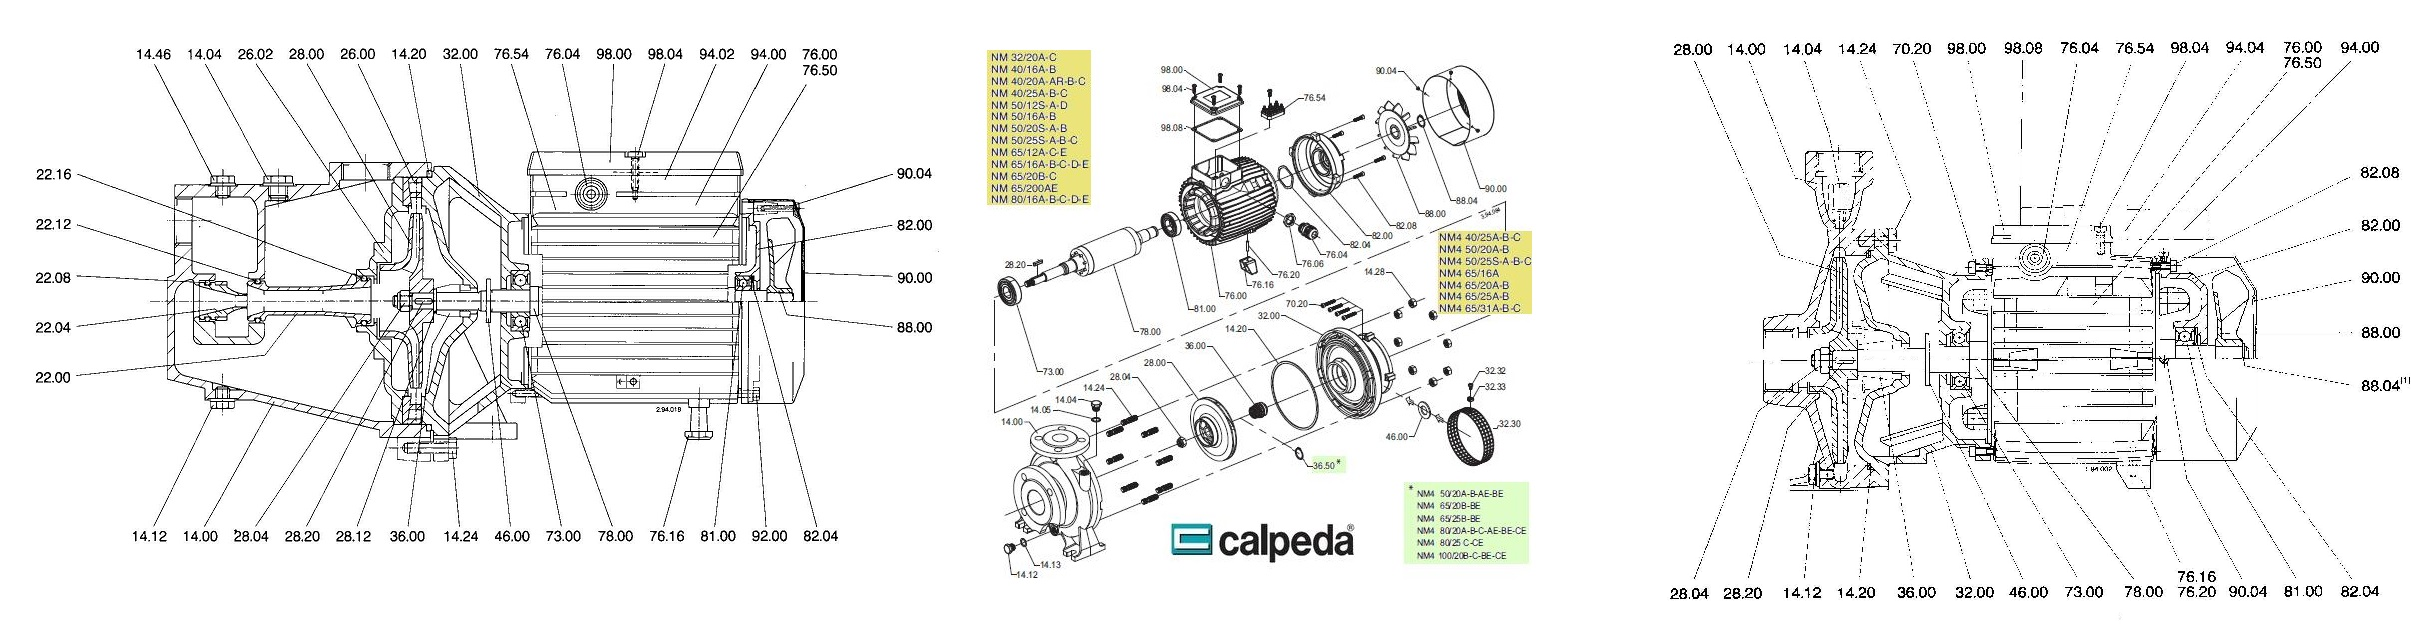 Calpeda Onderdelen / Parts